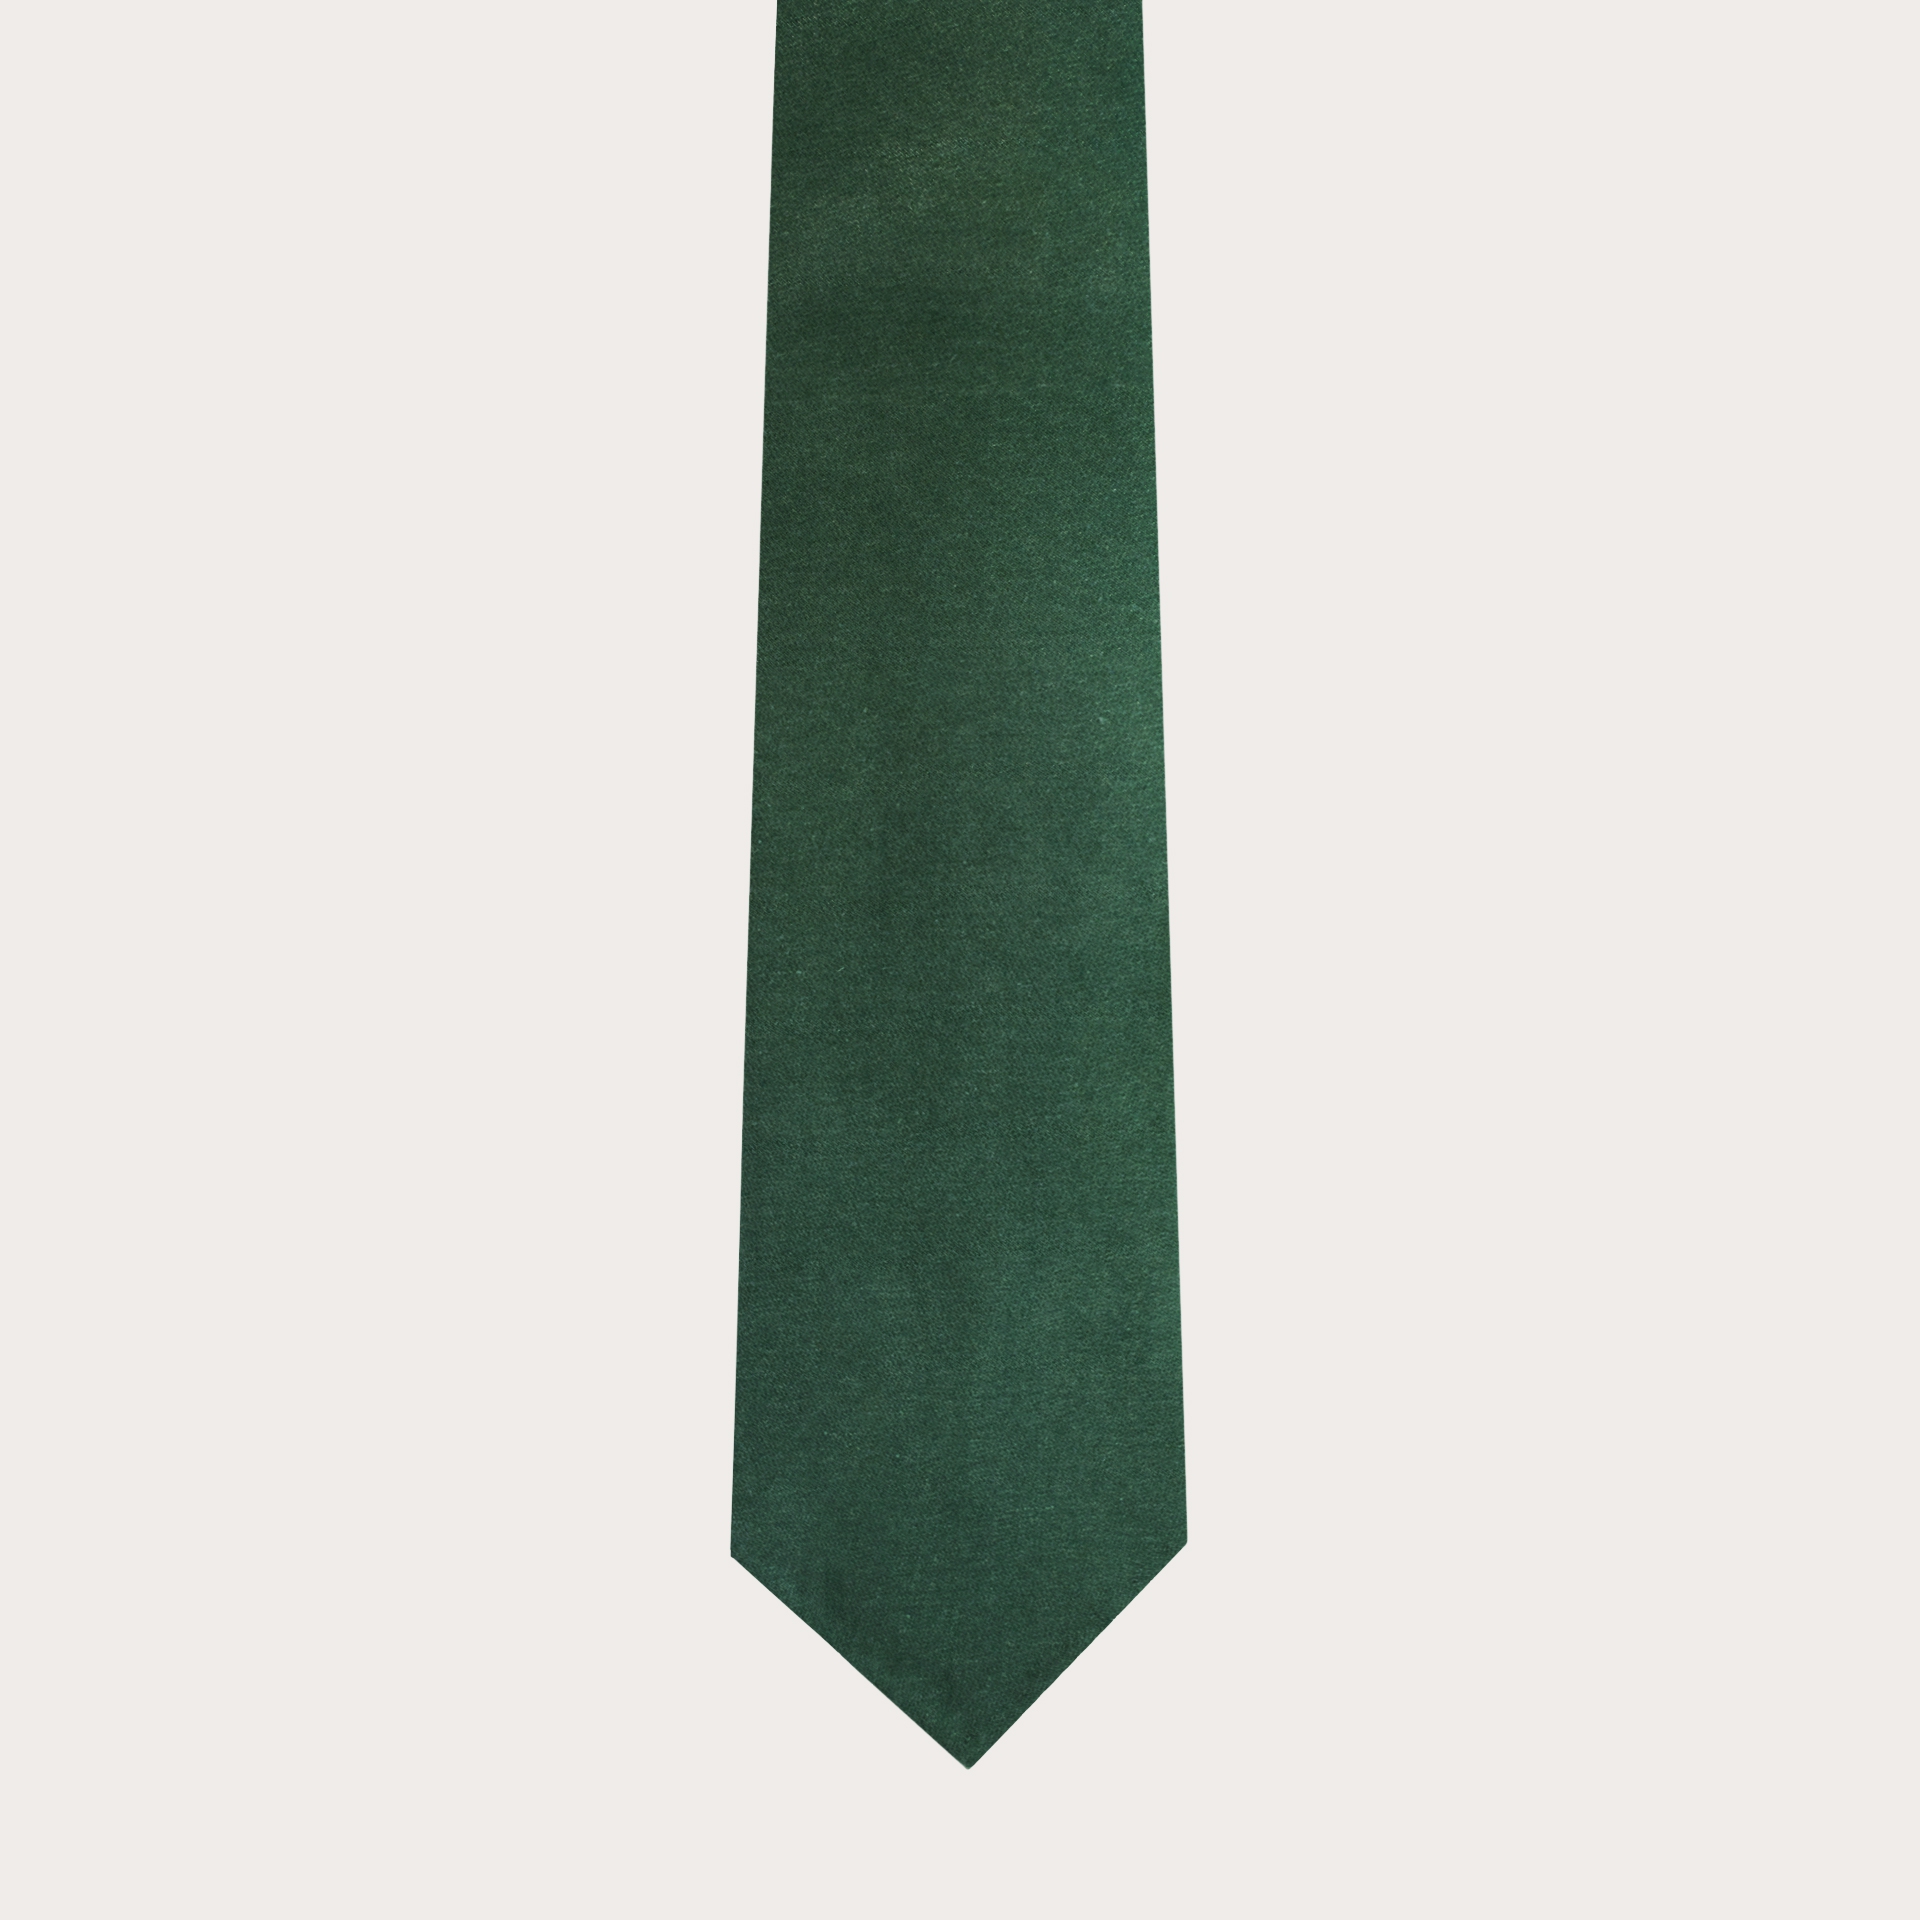 Cravatta sfoderata in lana e canapa, verde